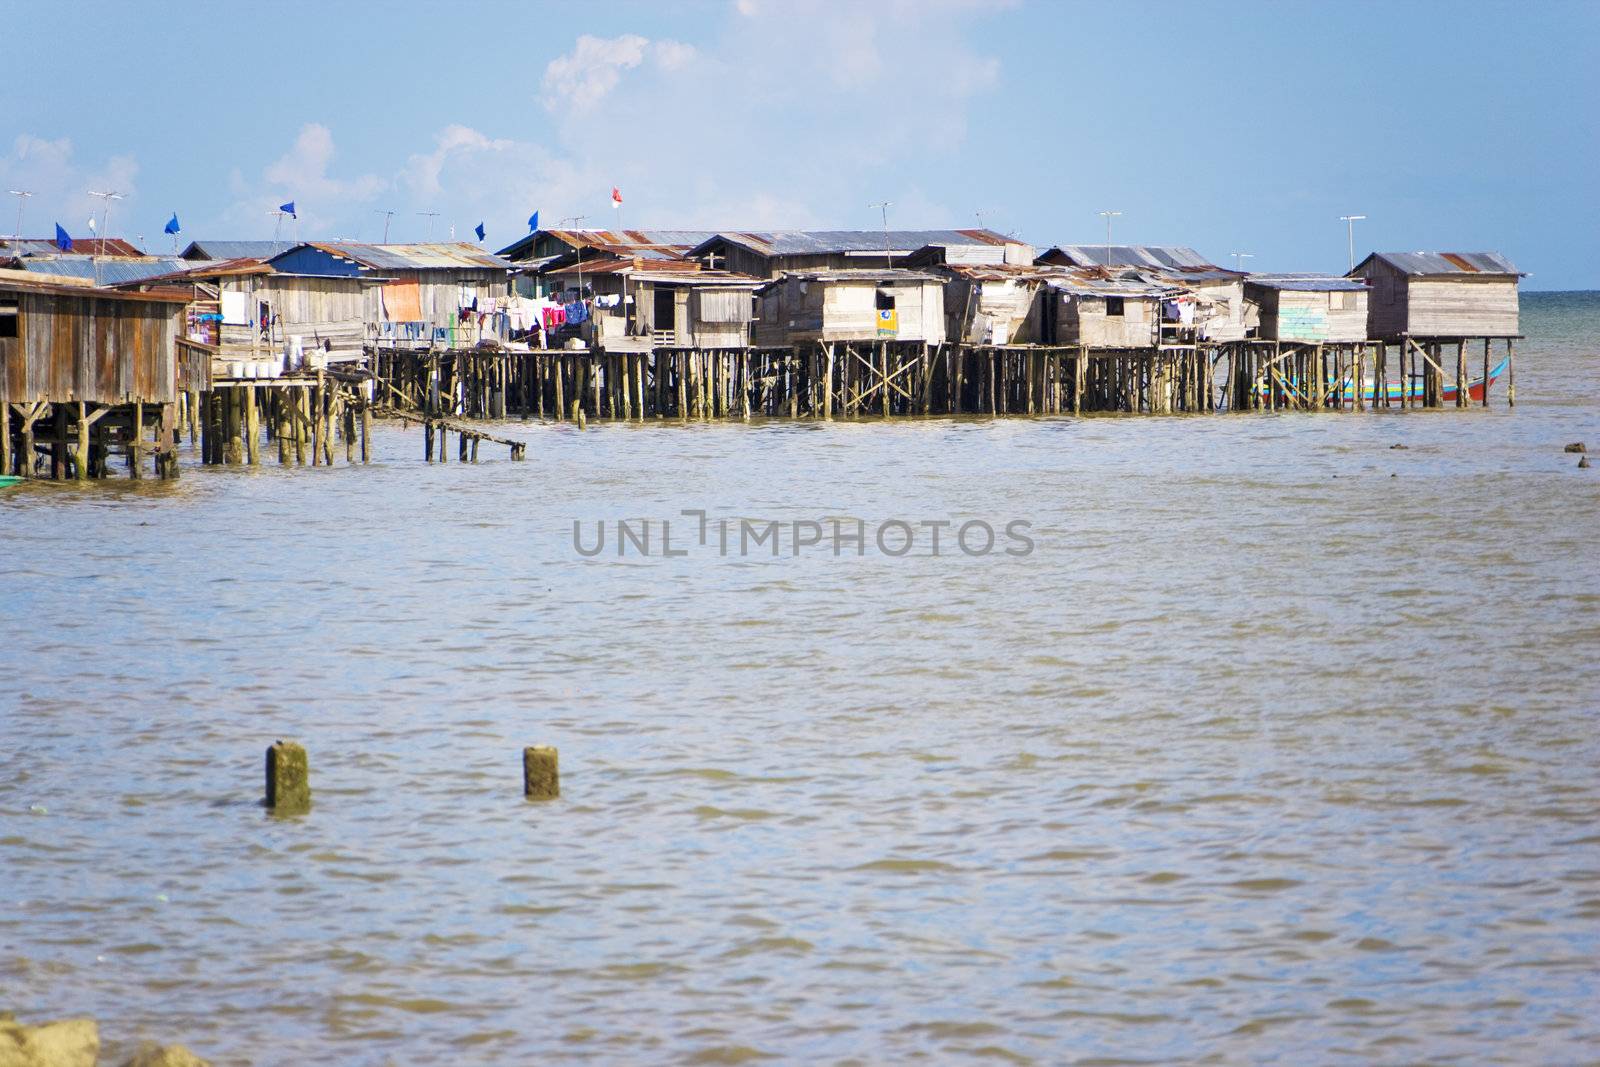 Image of coastal slums located at Tawau, Malaysia.